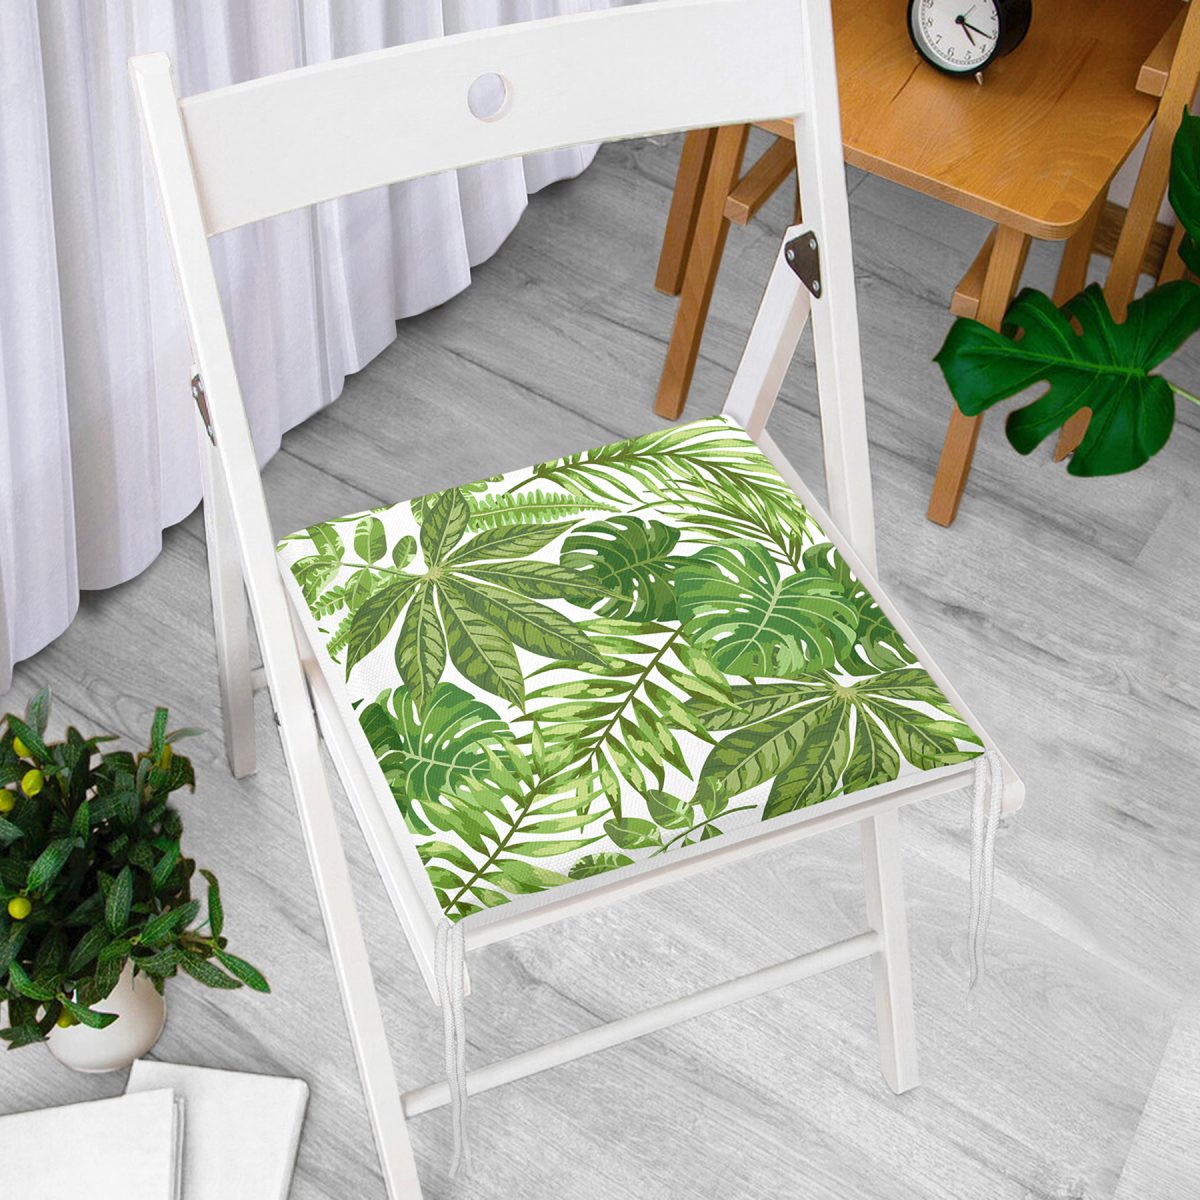 Beyaz Zemin Üzerinde Yeşil Yaprak Desenli Dijital Baskılı Modern Fermuarlı Sandalye Minderi Realhomes